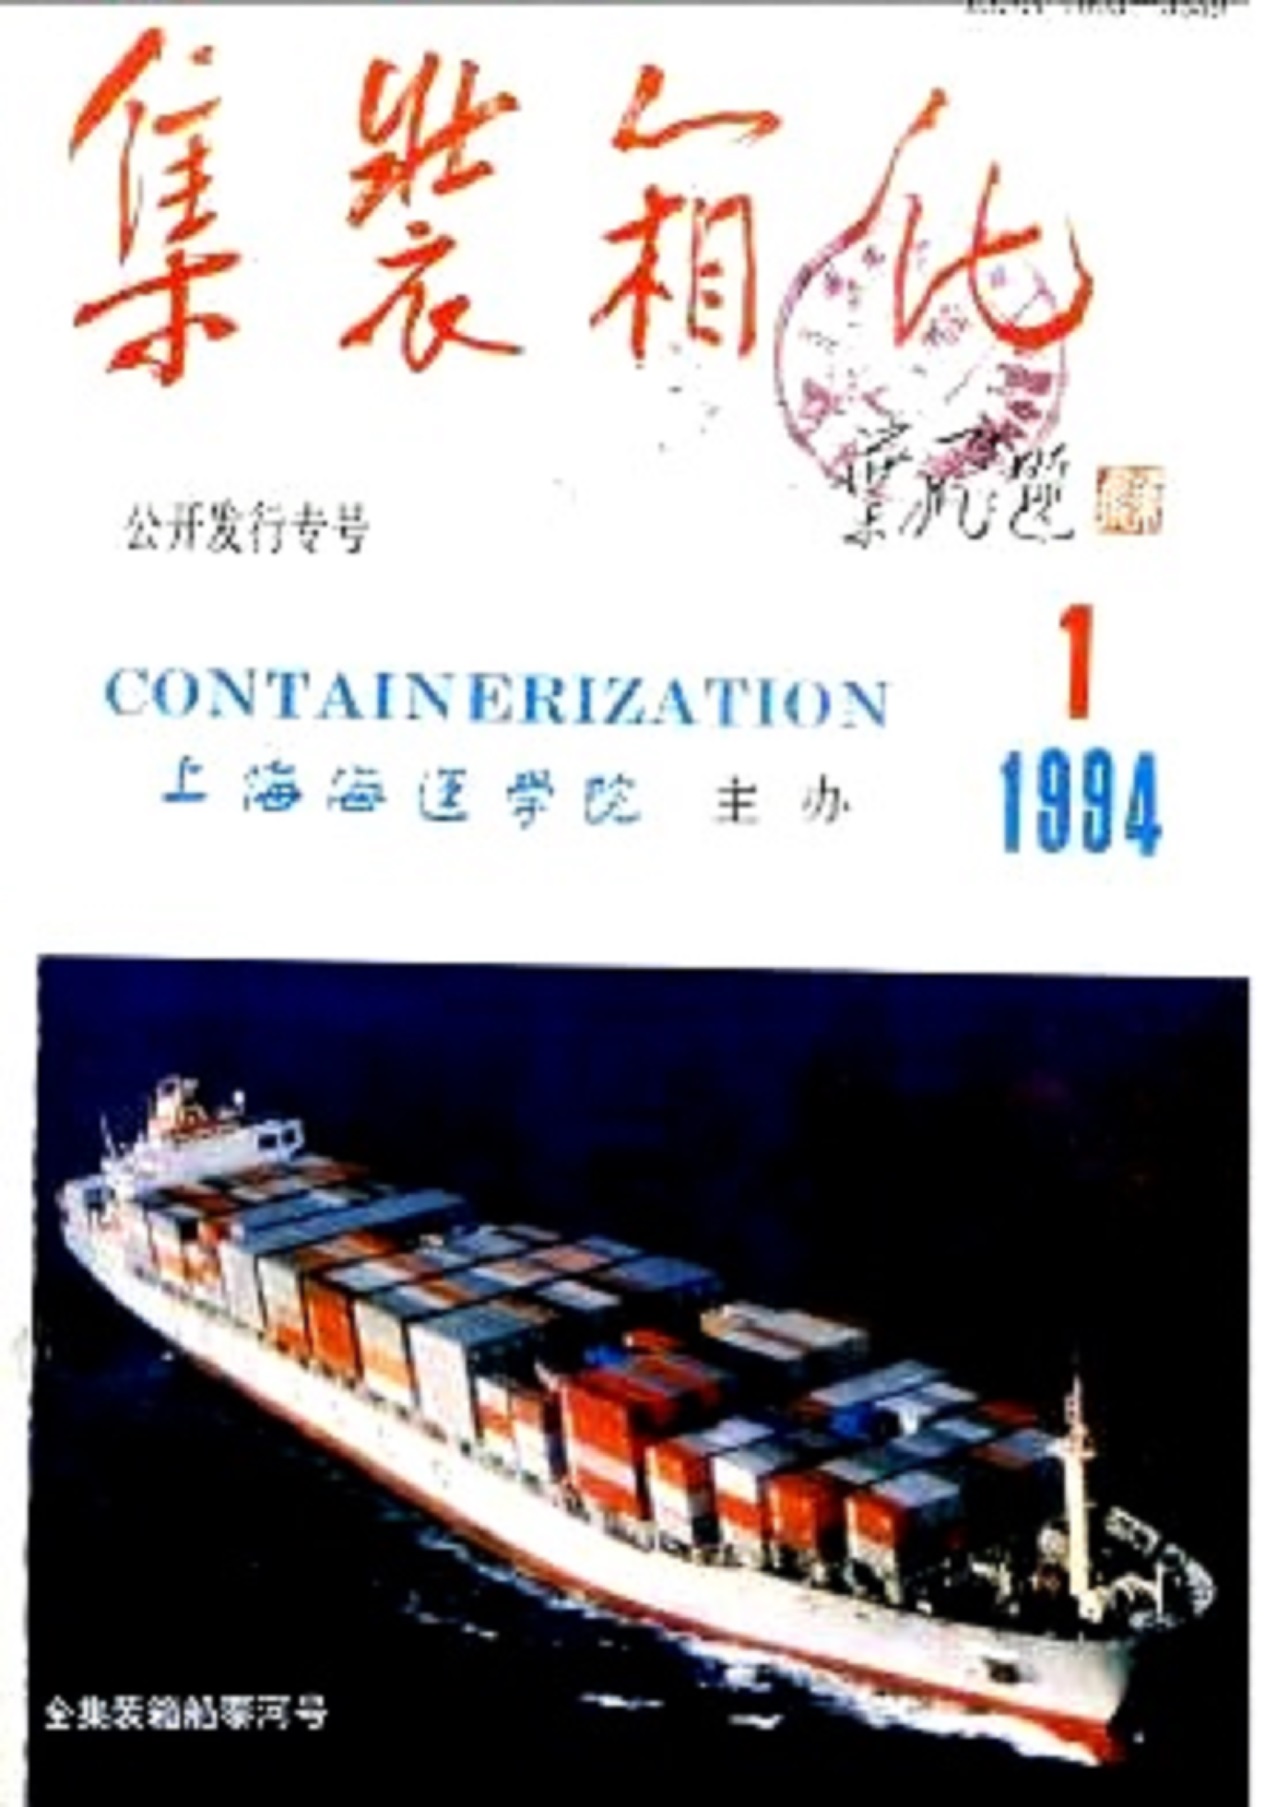 貨櫃化(上海海事大學主辦的期刊)